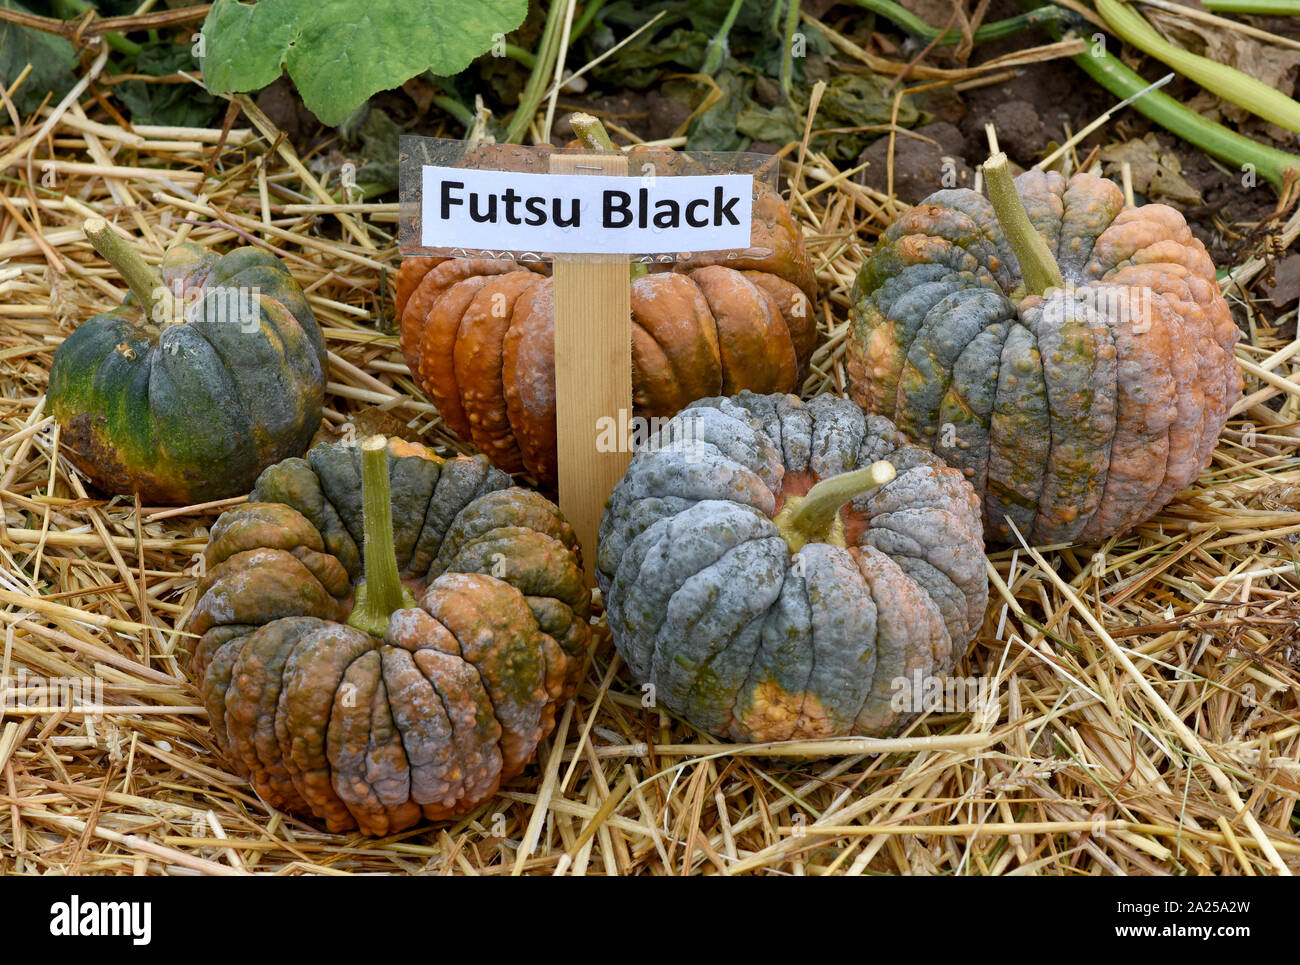 Futsu Black, ist ein Speisekuerbis und eine schoene attraktive Gartenfrucht. Futsu Black, is a Edible Pumpkin and a beautiful attractive garden fruit. Stock Photo